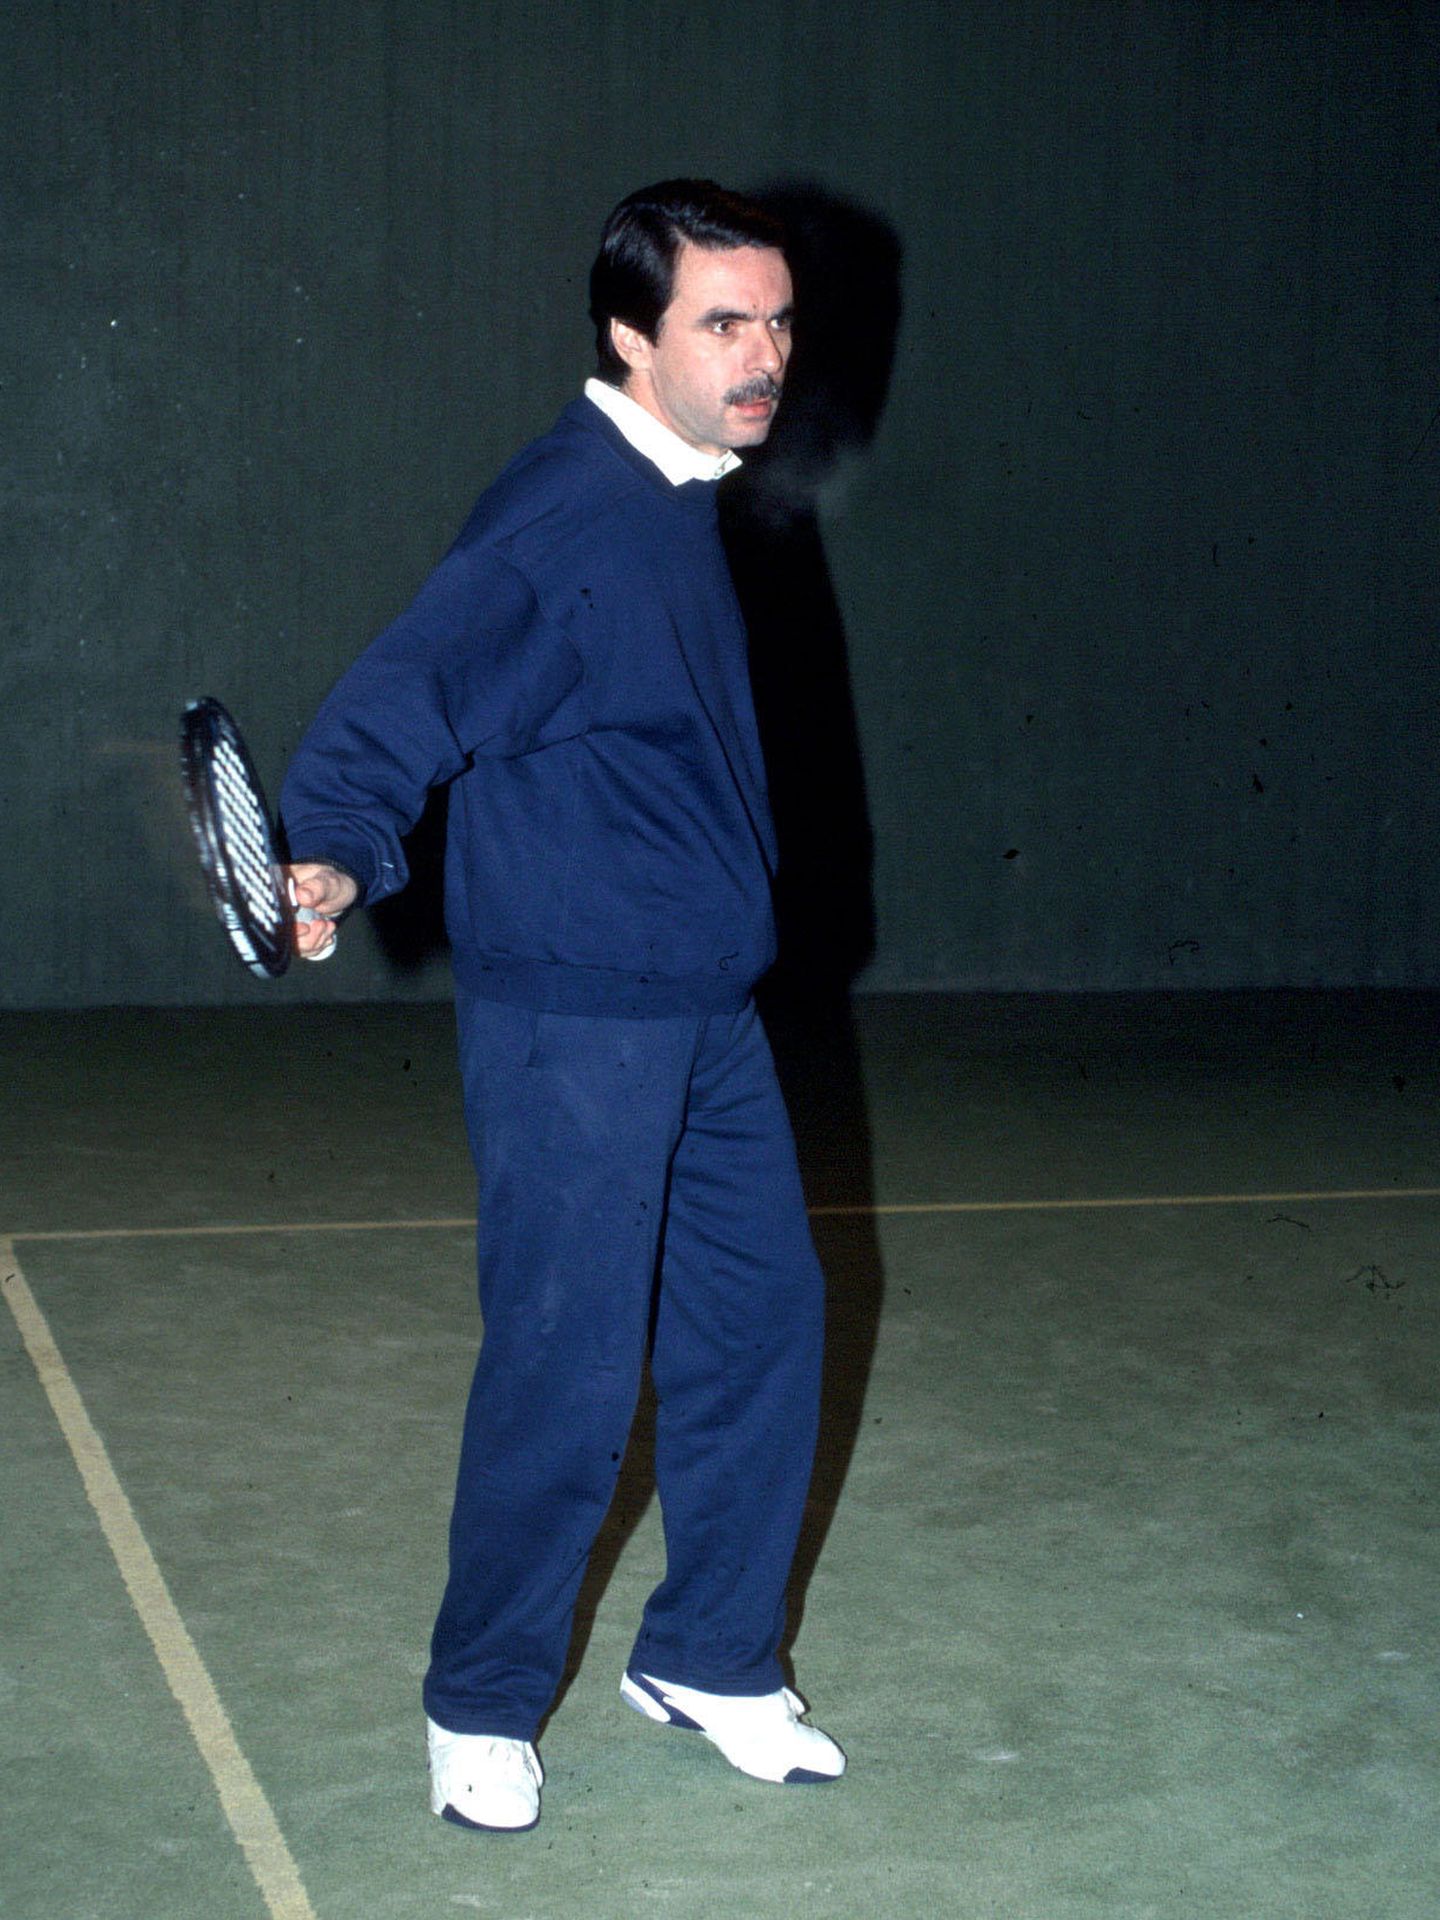 El expresidente, José María Aznar, jugando al pádel en Oropesa de Mar en una foto de archivo. El único deporte que puede jugarse con camisa (EFE)